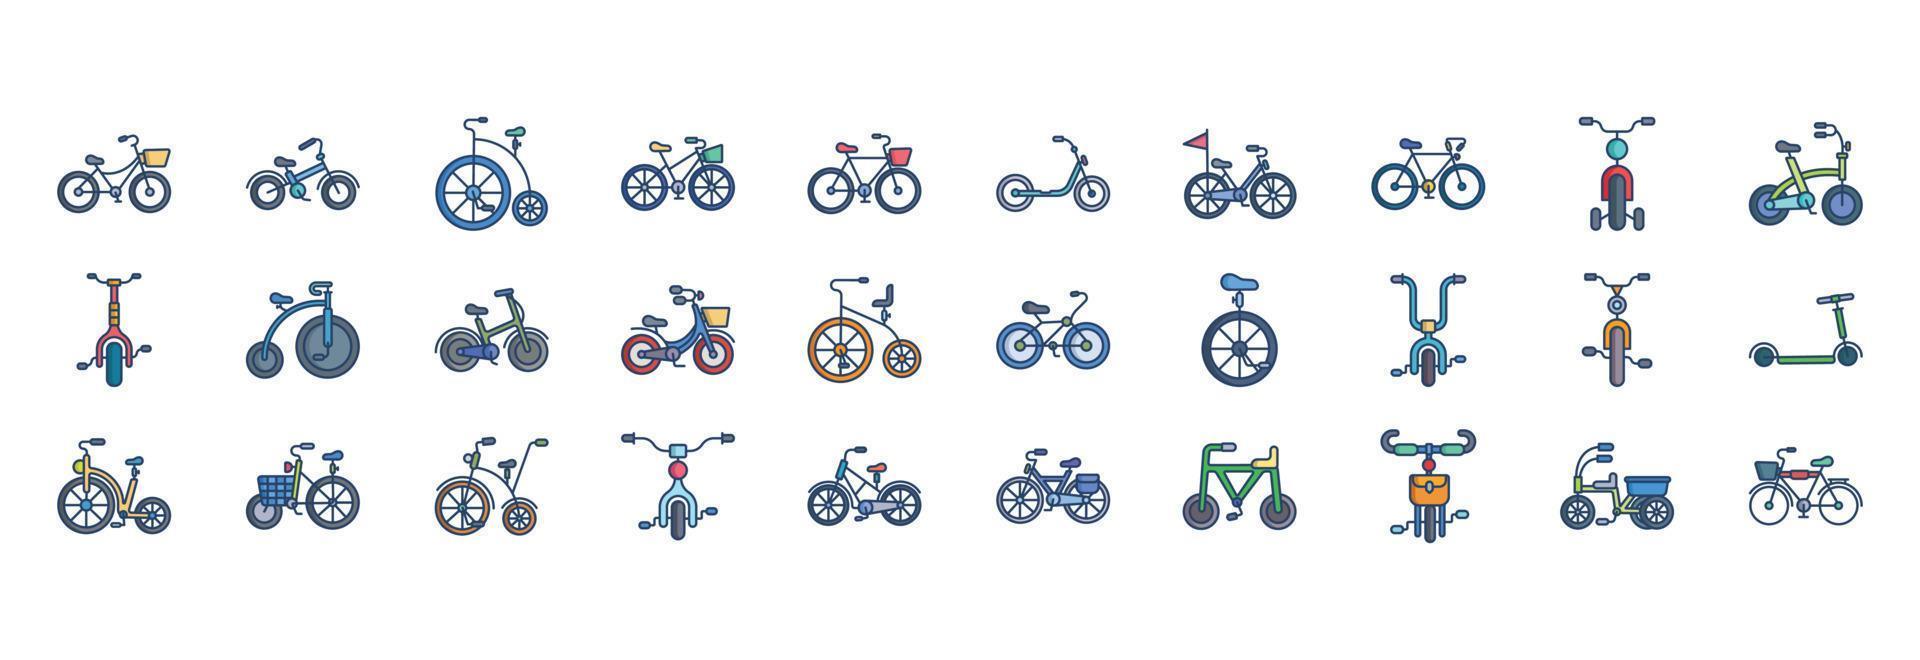 collection d'icônes liées au vélo, y compris des icônes comme la roue, la pédale, le siège et plus encore. illustrations vectorielles, ensemble parfait de pixels vecteur